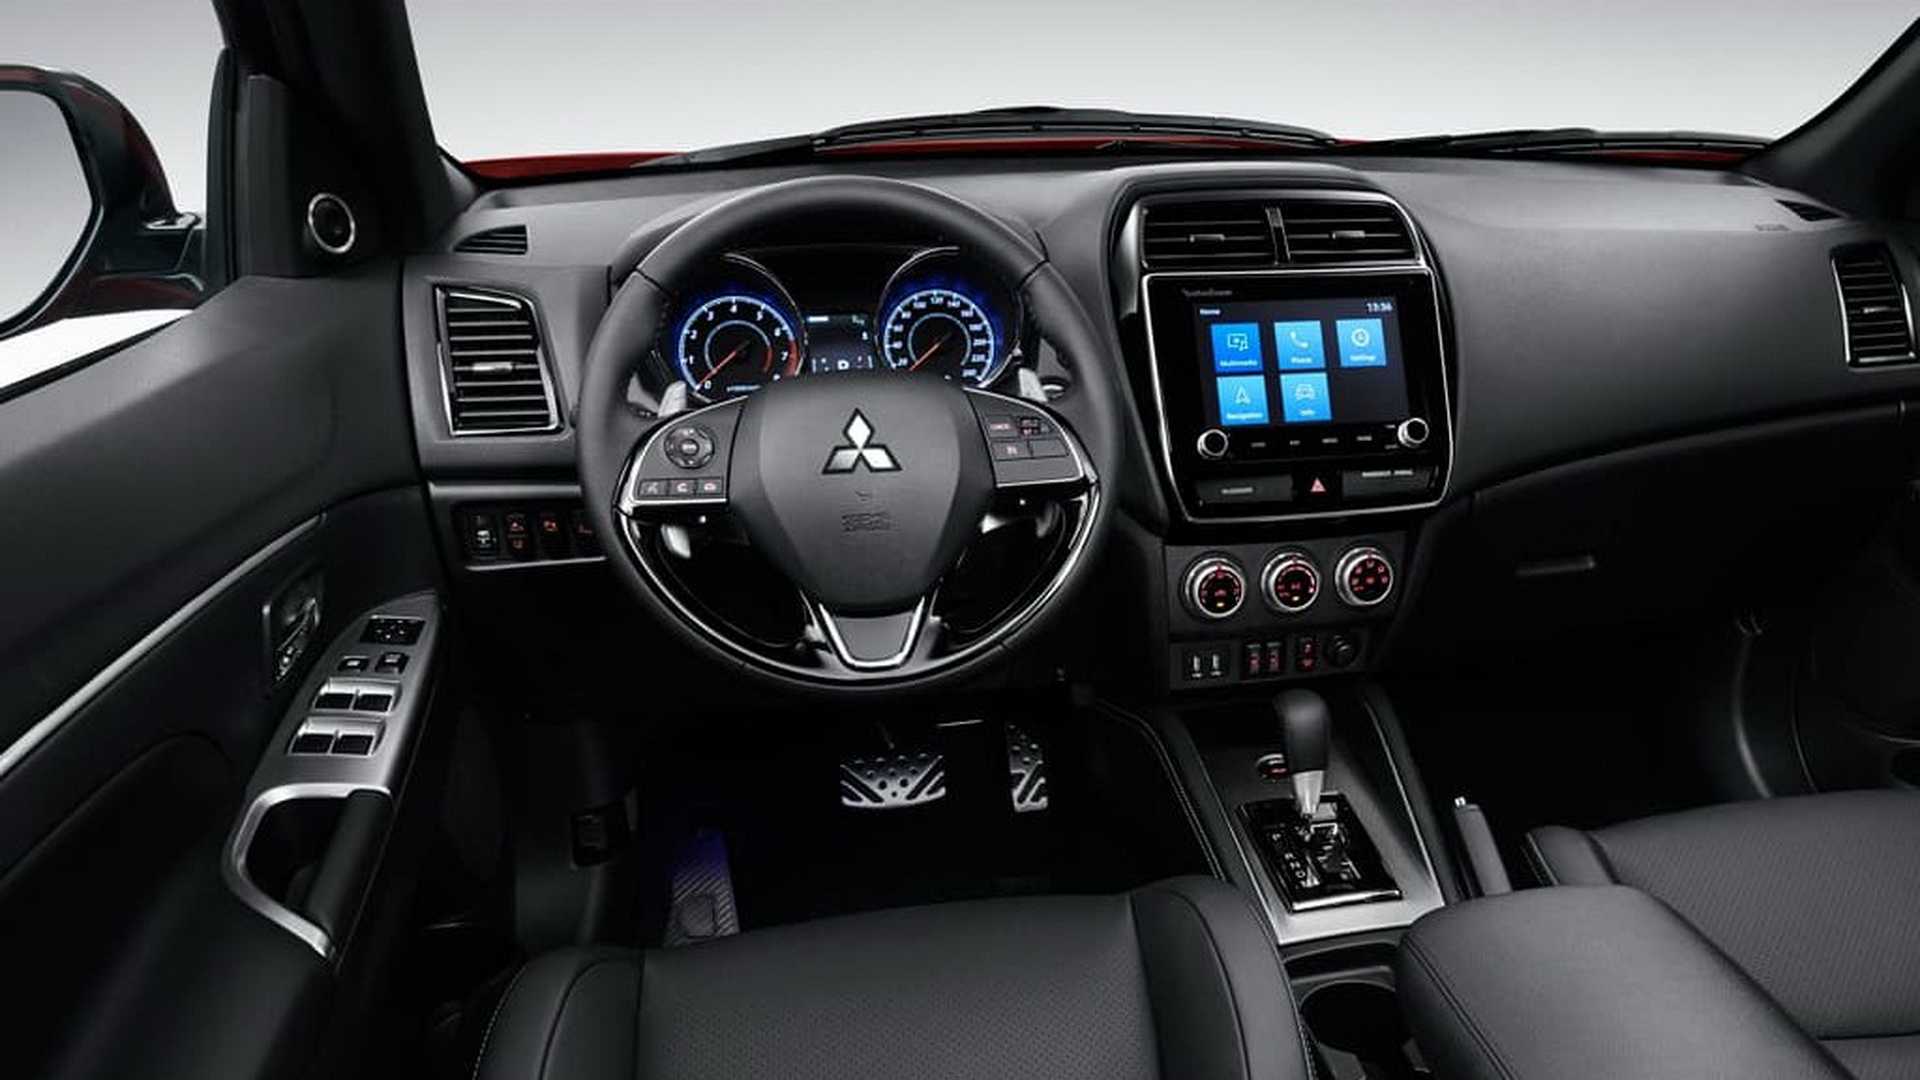 Nova geração do Mitsubishi ASX é apresentada nesta terça-feira, 12. SUV agora adota a identidade da marca e apresenta cabine atualizada.